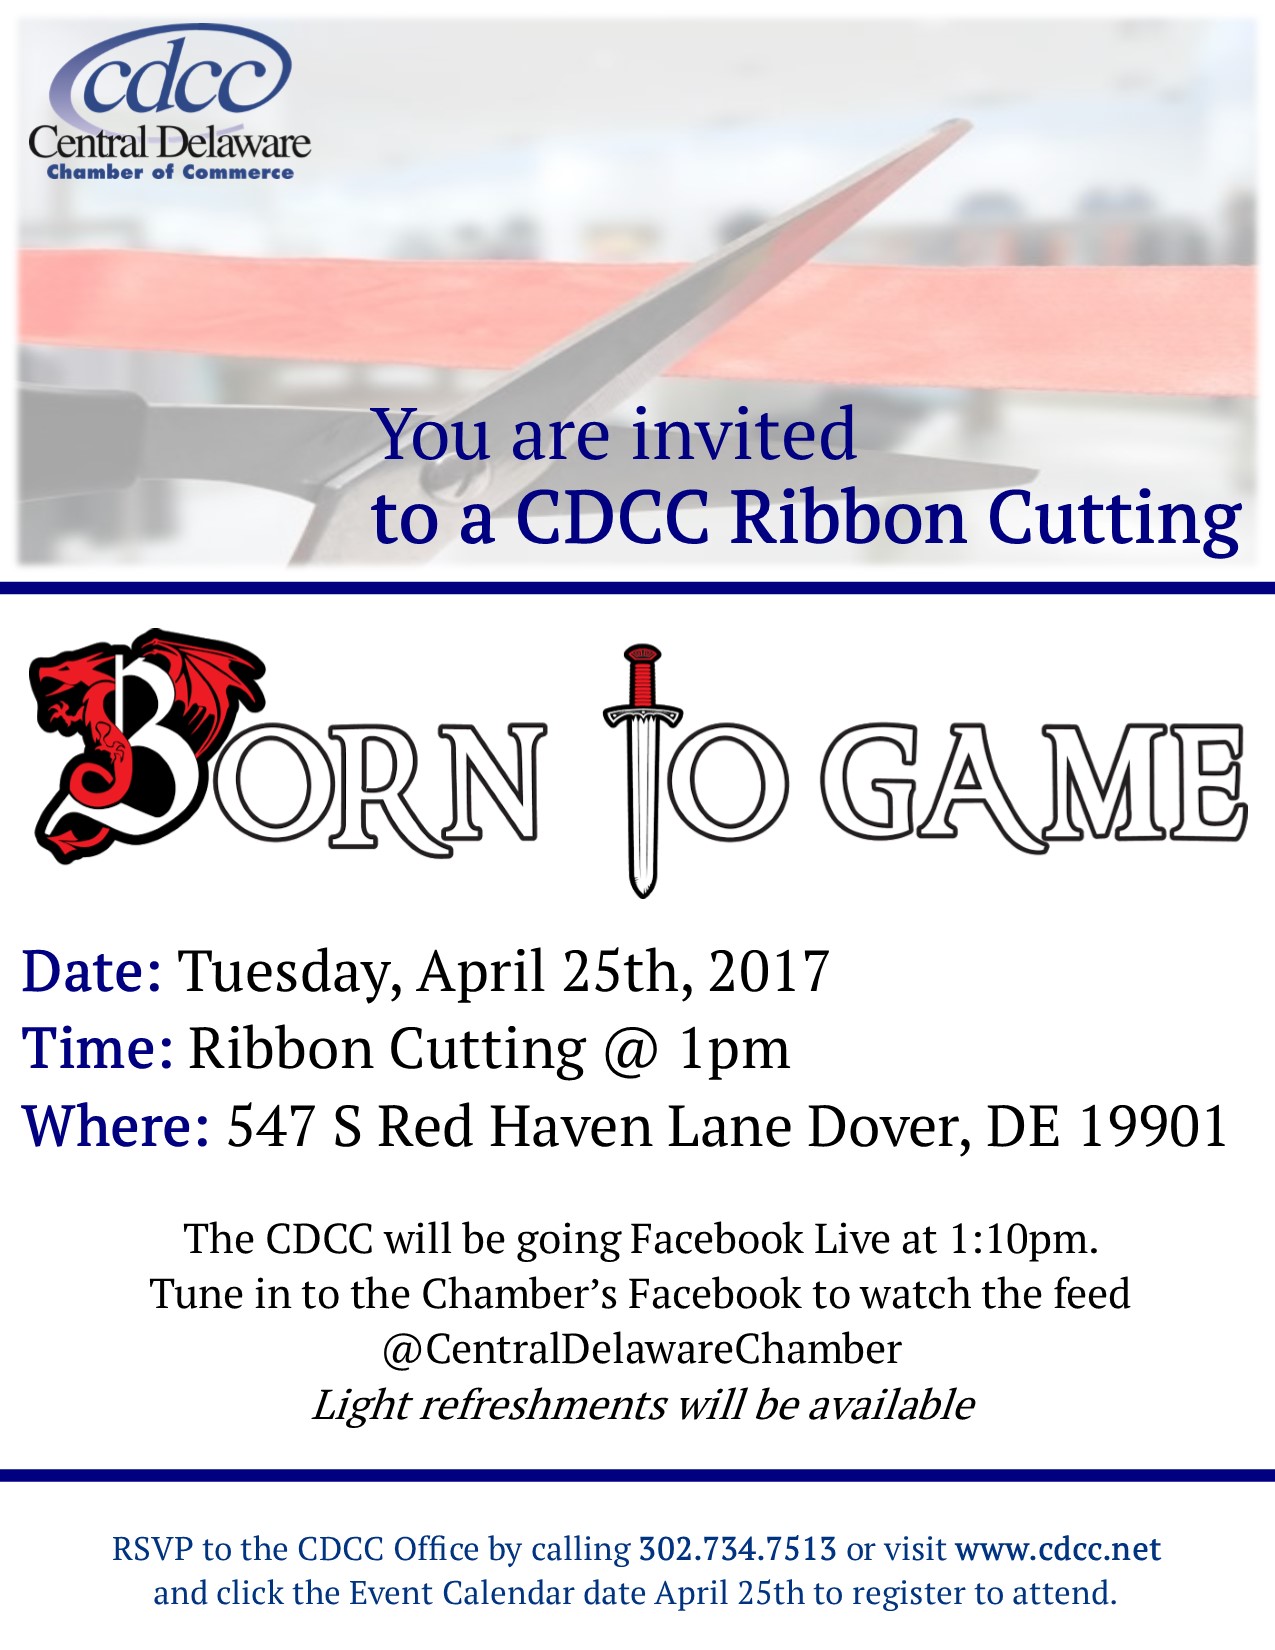 Ribbon Cutting - Born to Game